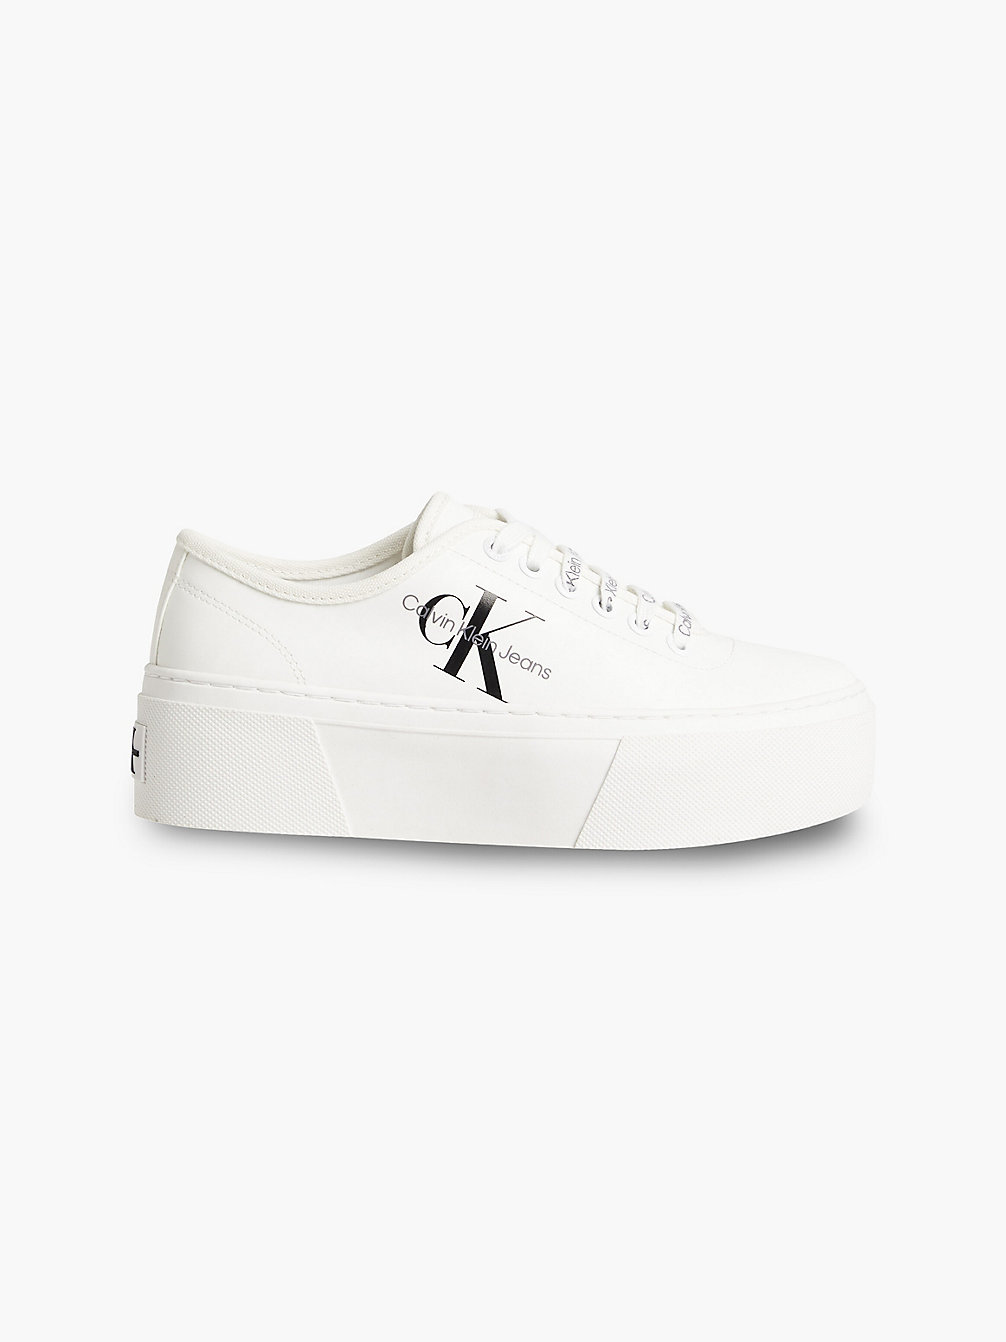 BRIGHT WHITE > Buty Sportowe Na Platformie Z Przetworzonego Materiału Płóciennego > undefined Kobiety - Calvin Klein